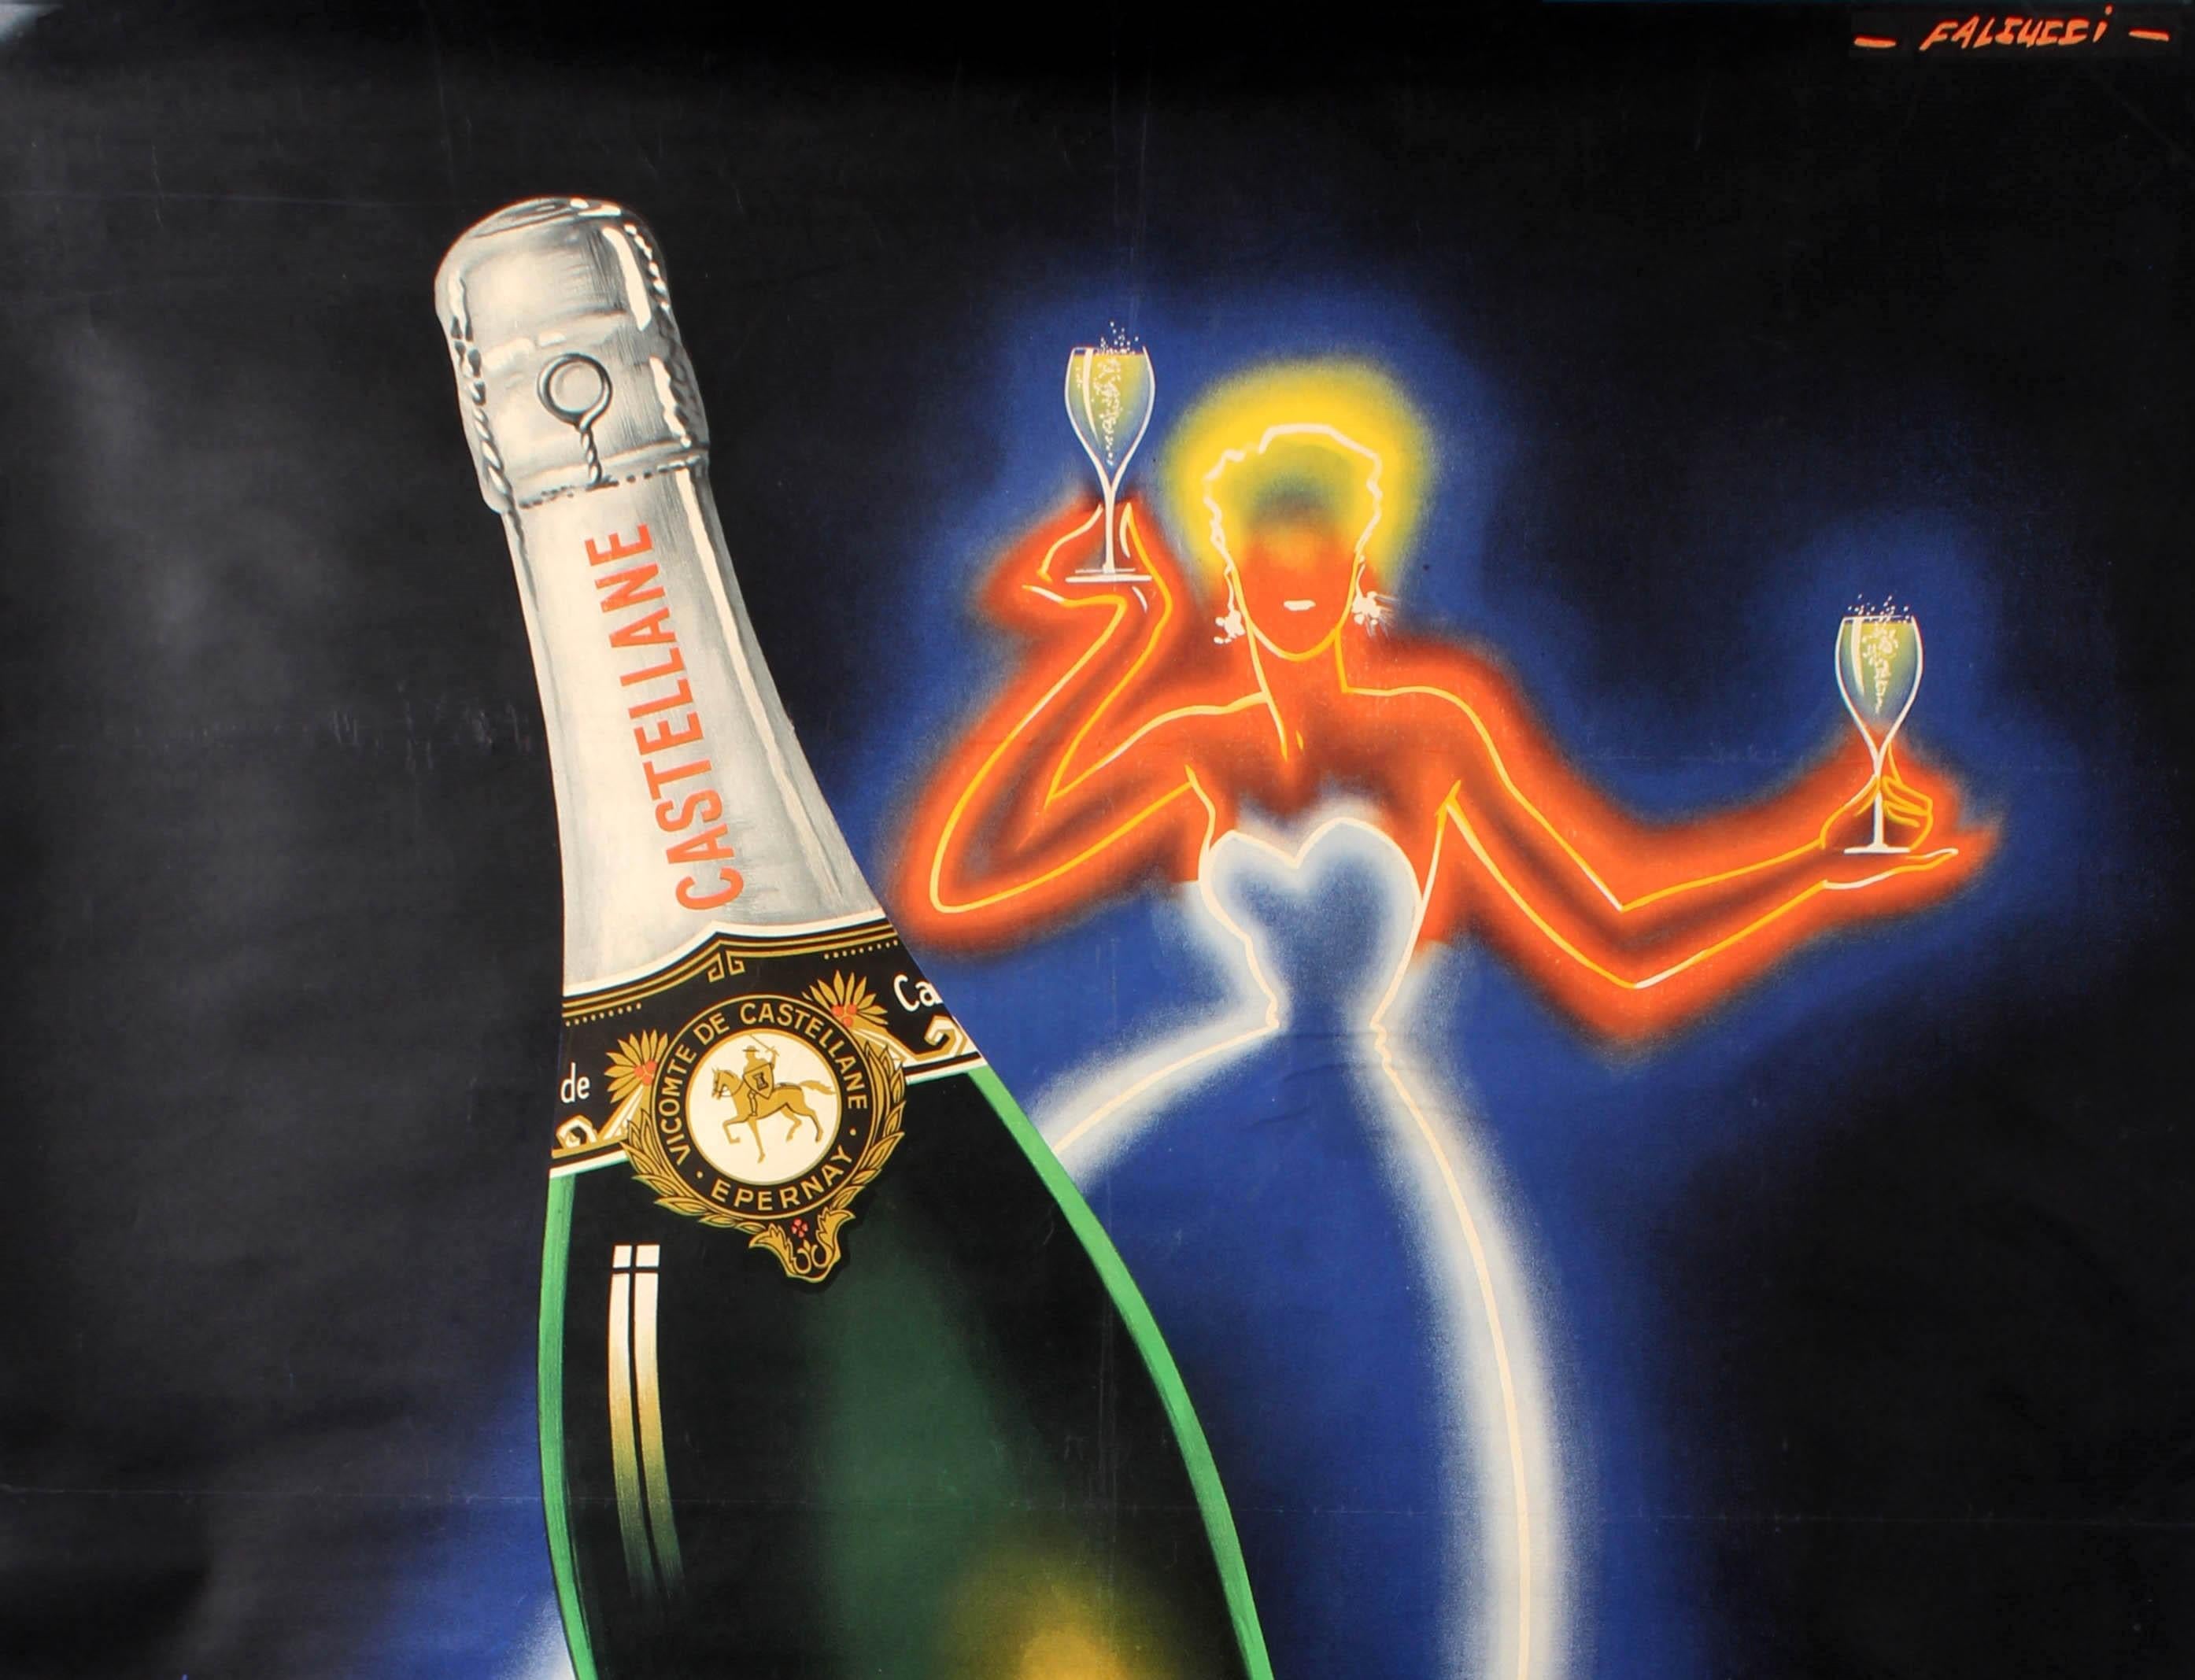 Original-Getränke-Werbeplakat für Champagne de Castellane mit einem stilvollen Entwurf von Robert Falcucci (1900-1989), der eine elegante Dame in Neonfarben zeigt, die zwei Gläser mit Castellane-Champagner vor einem dunklen Hintergrund hält, mit